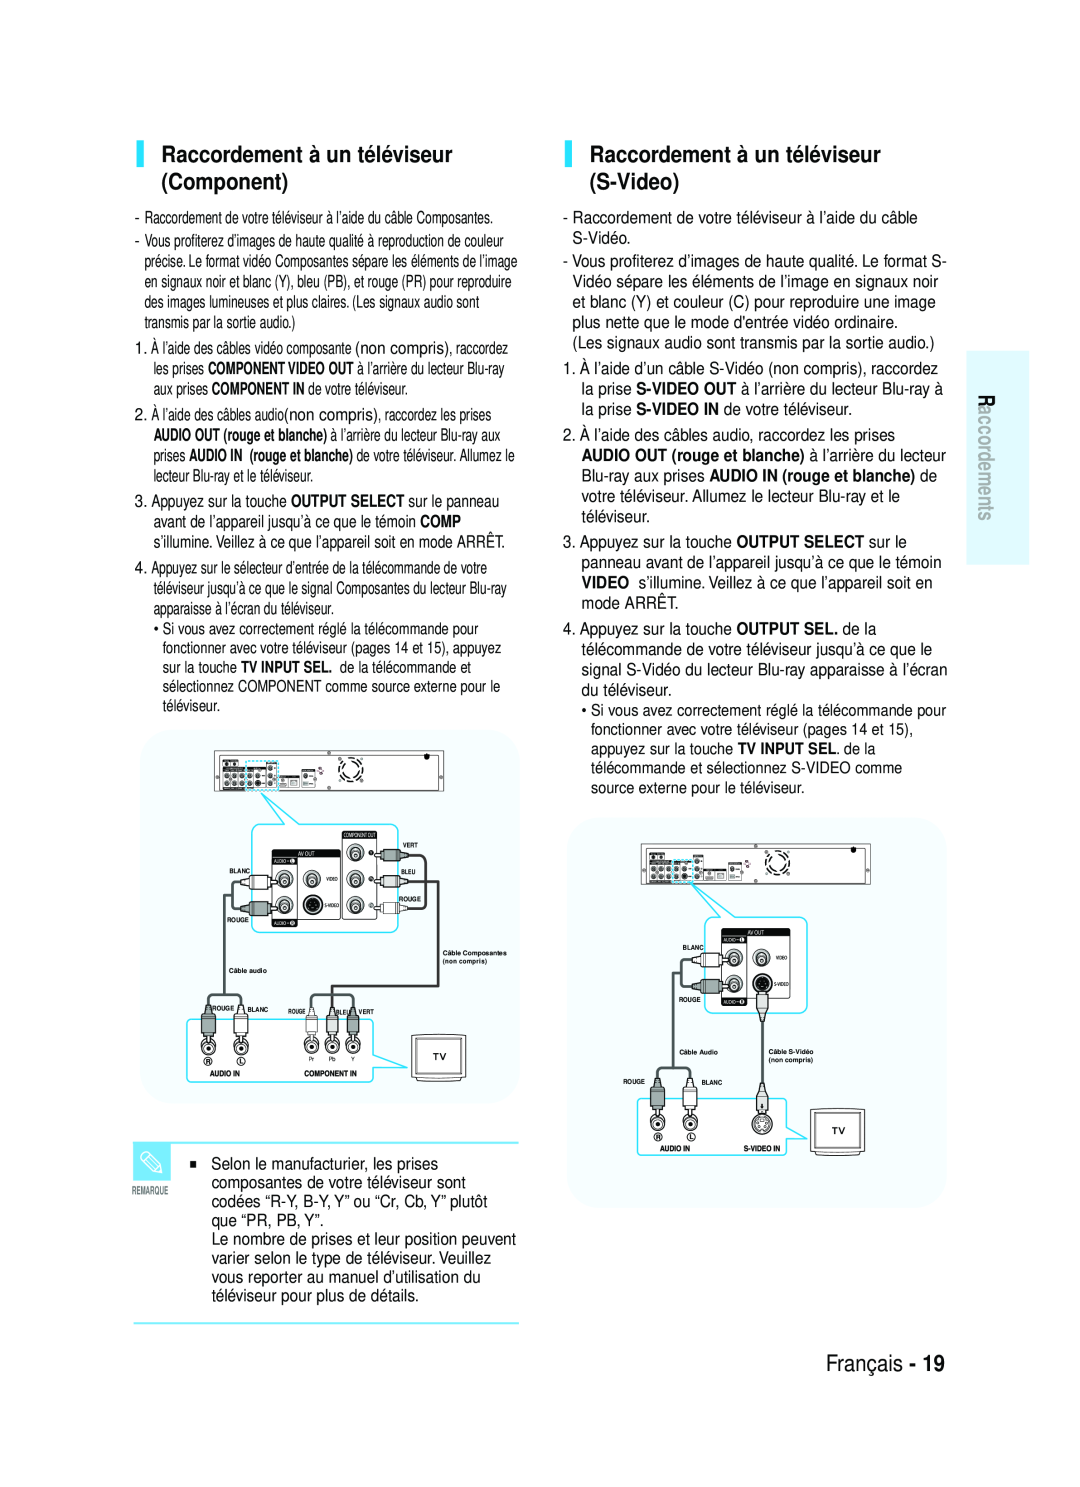 Samsung 20070320082319250 manual Raccordement à un téléviseur Component, Raccordement à un téléviseur S-Video, Français 